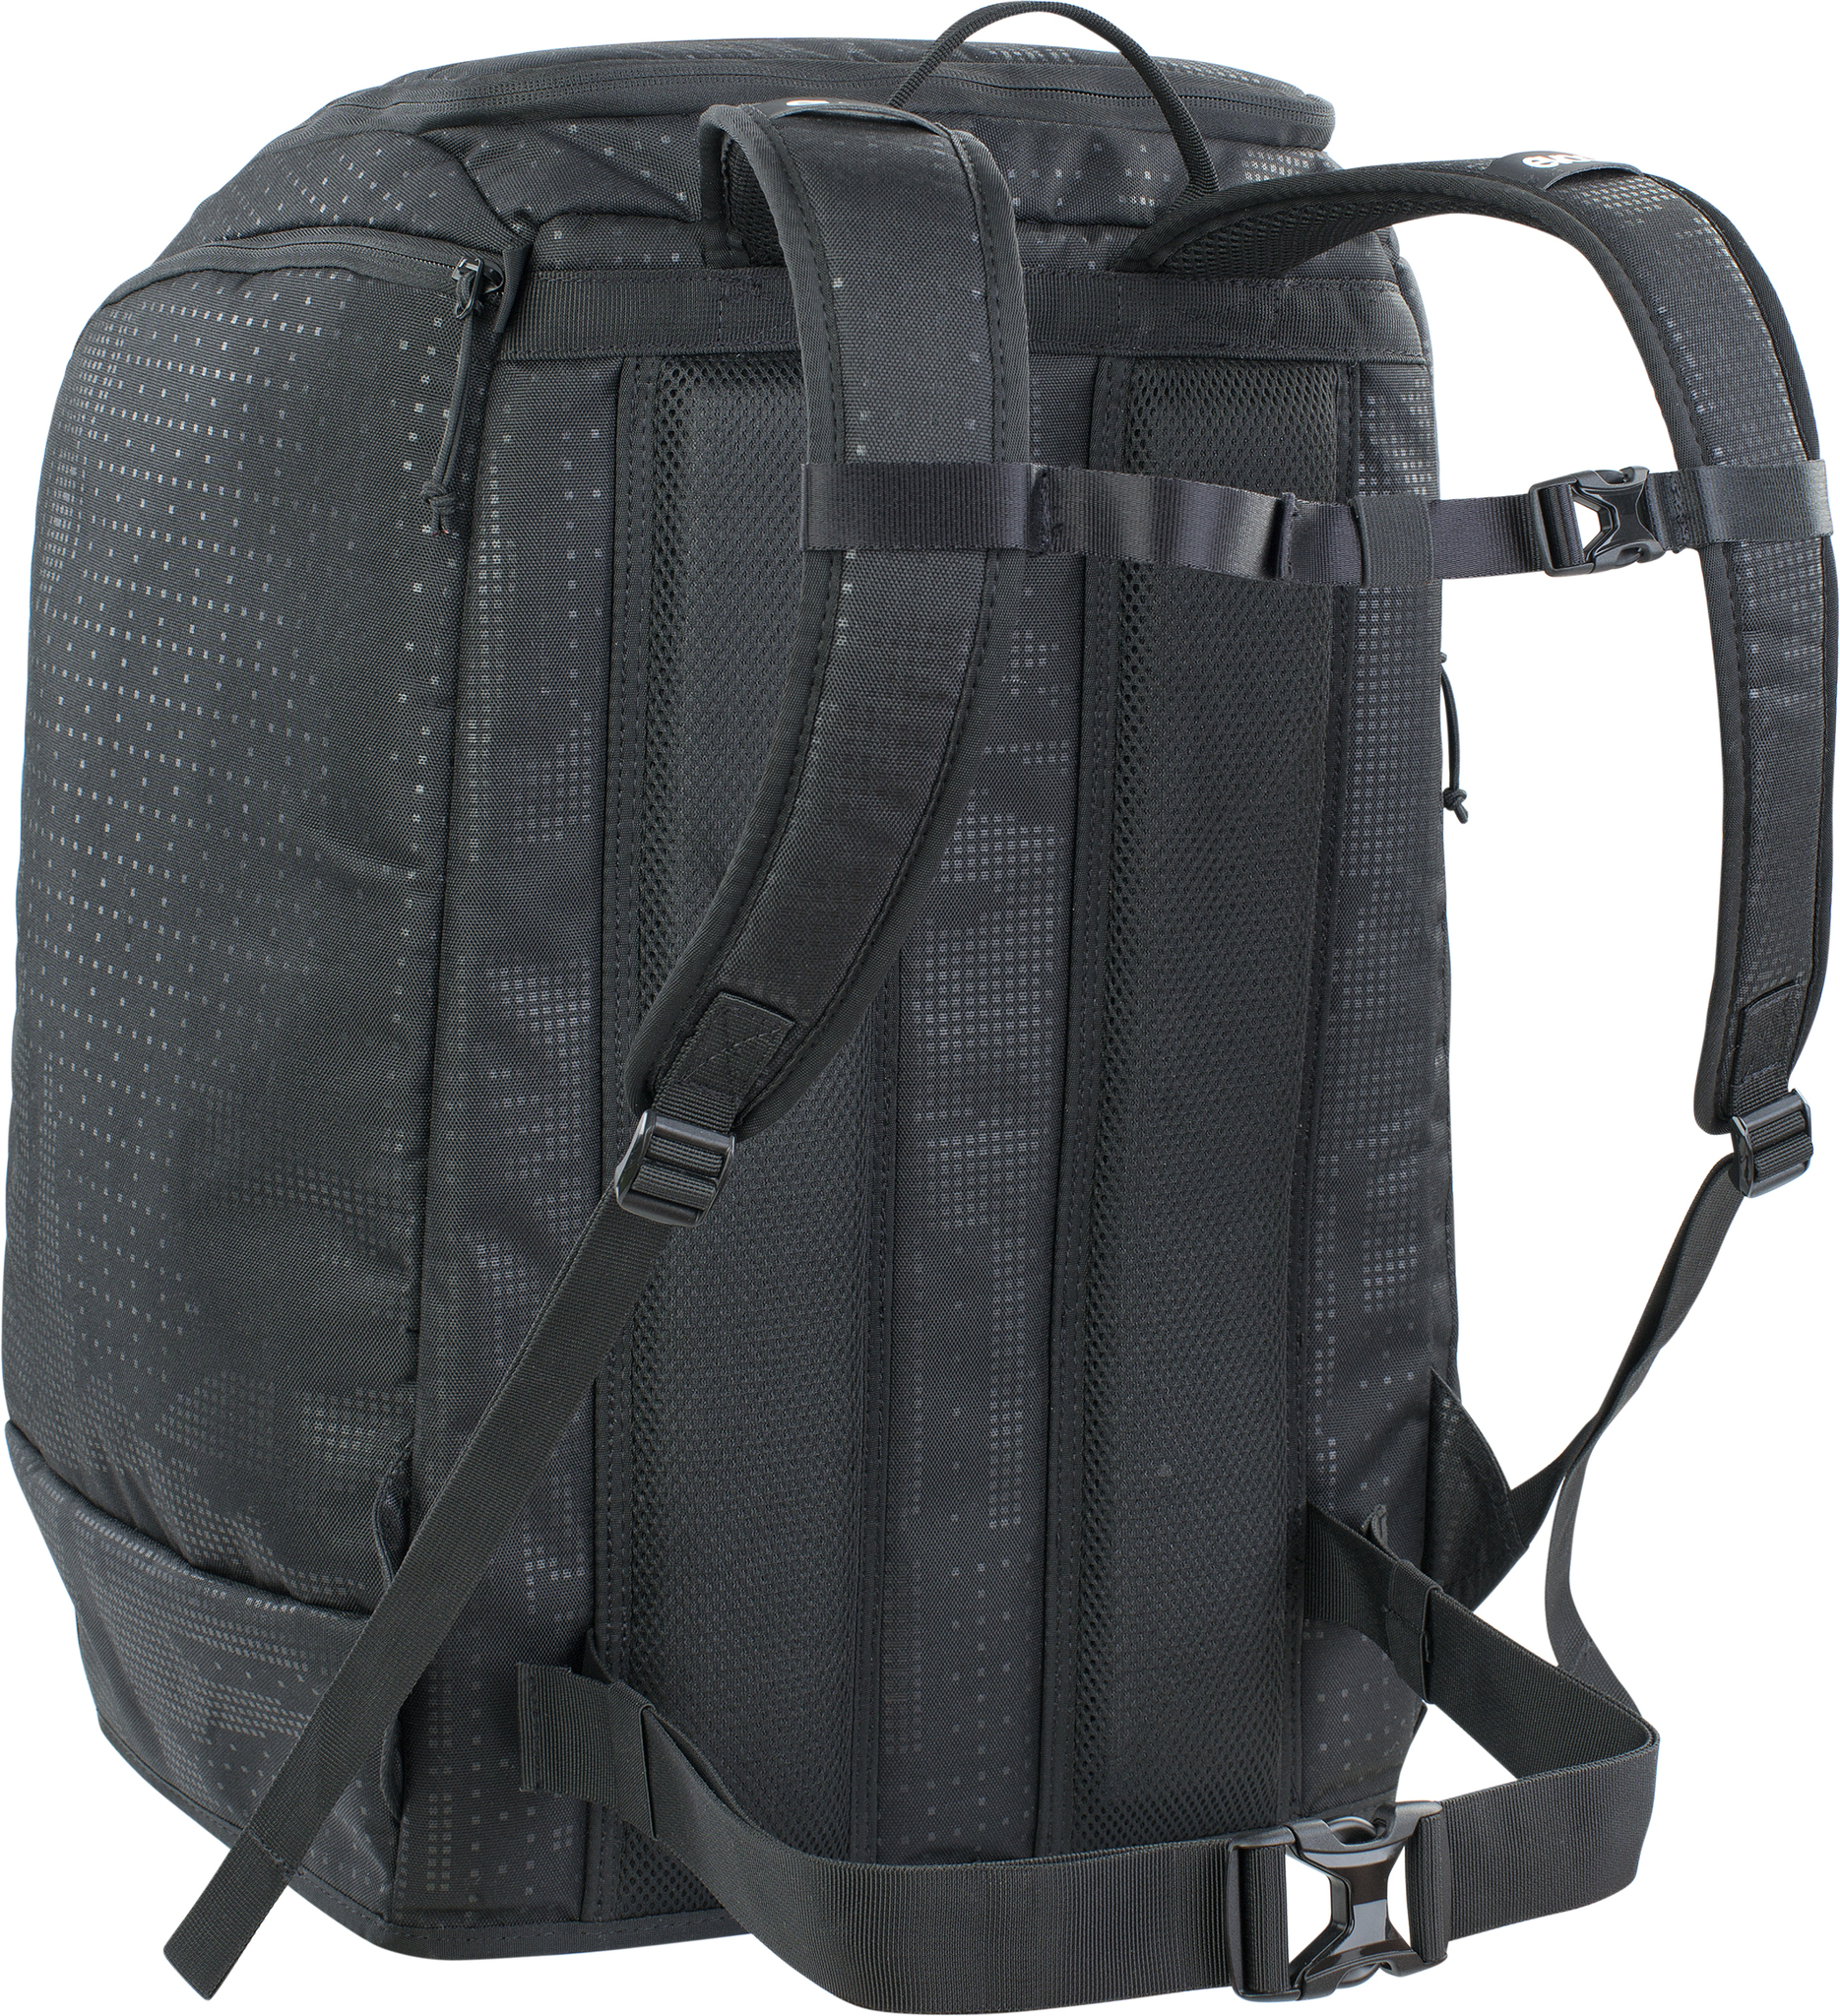 Evoc Gear Backpack 60